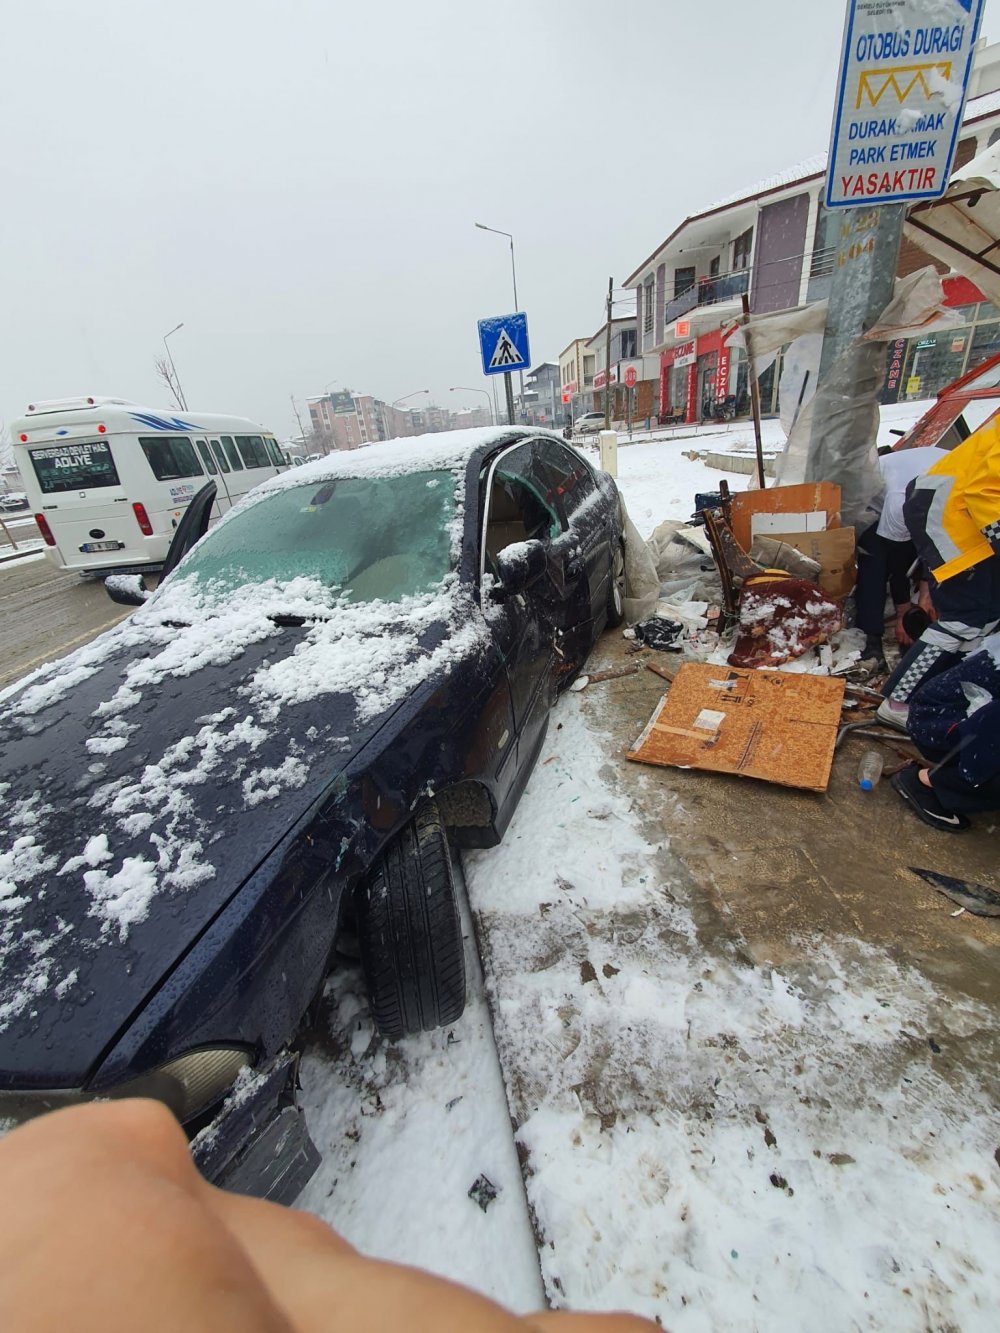 Denizli’de kar yağışı nedeniyle direksiyon hakimiyetini kaybeden sürücü, kaldırımda simit satan seyyar satıcı Cemil Varol’a çarptı. Kazada ağır yaralanan yaşlı adam hastanede hayatını kaybetti.